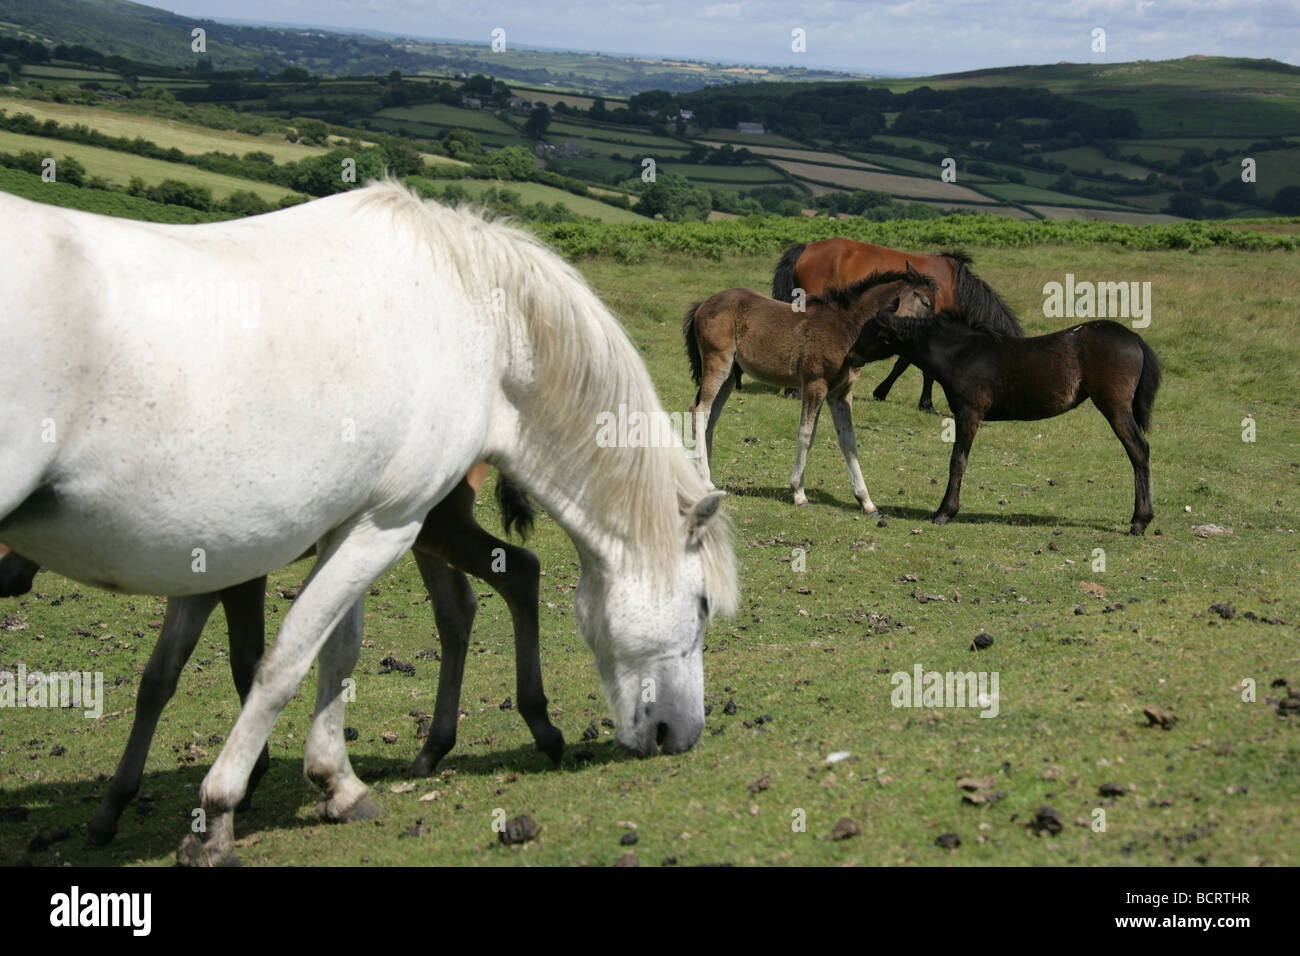 Area of Dartmoor, England. Feral Dartmoor ponies grazing with Dartmoor National Park in the background. Stock Photo